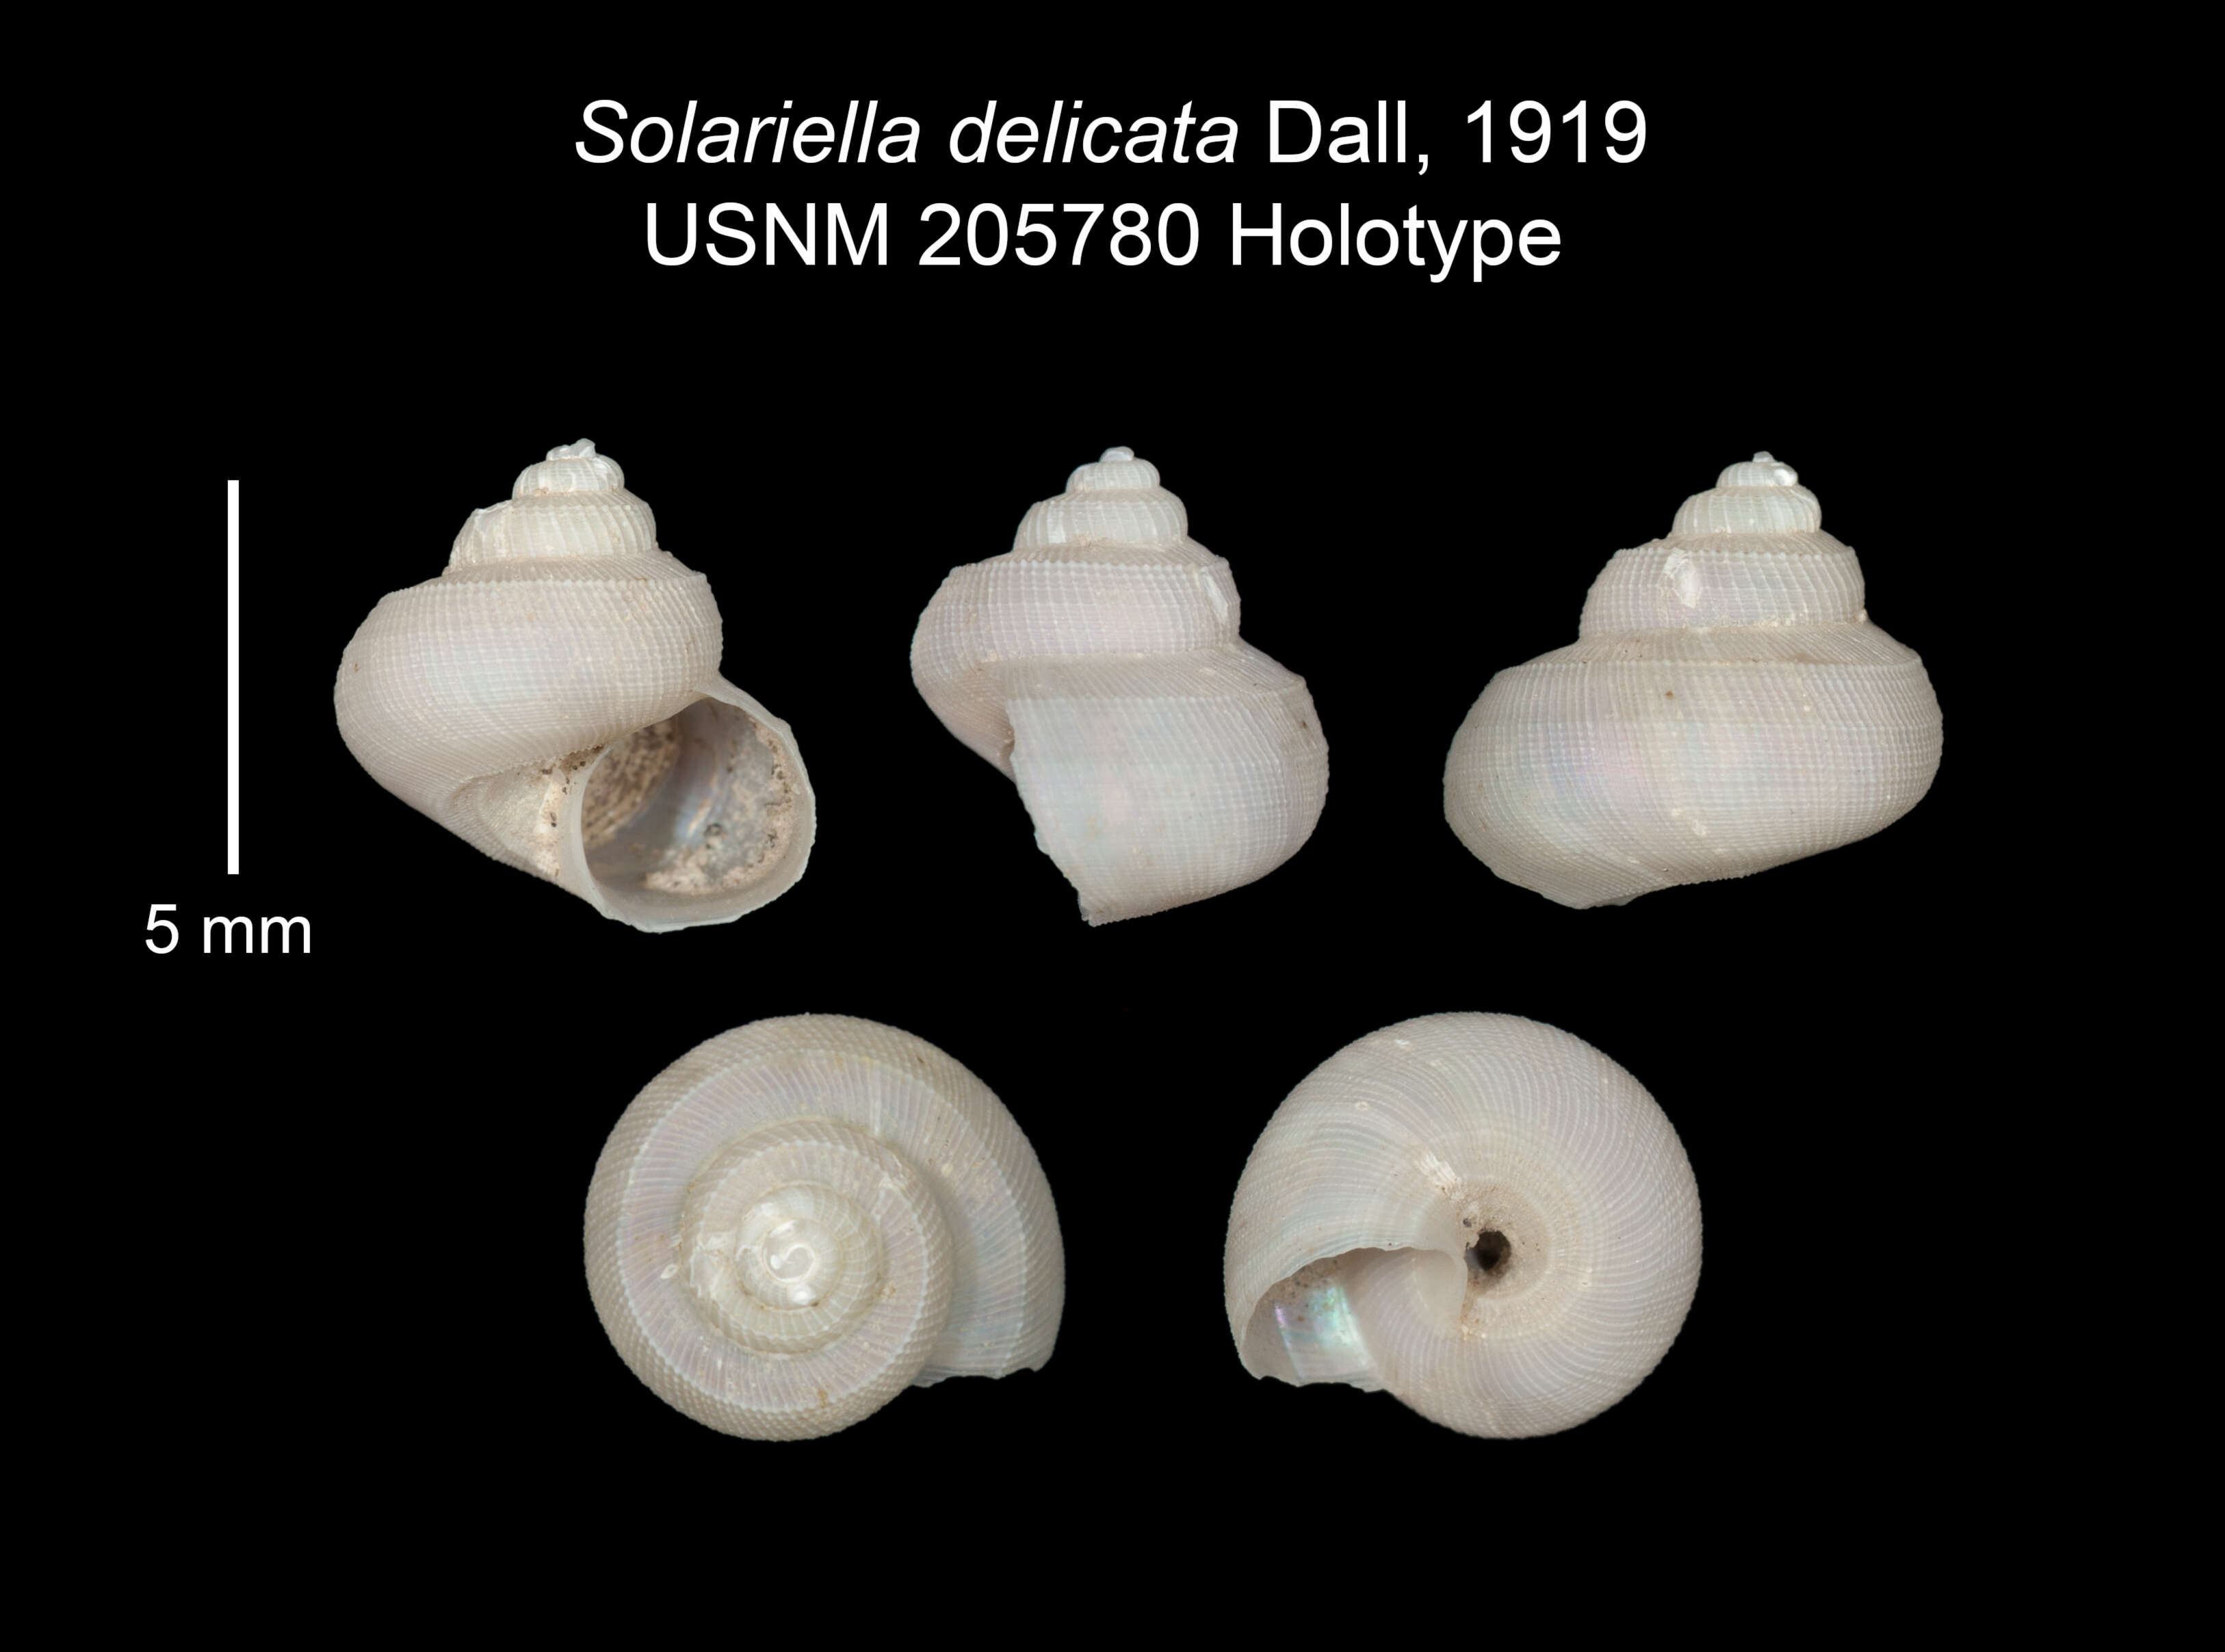 Image of Solariella delicata Dall 1919